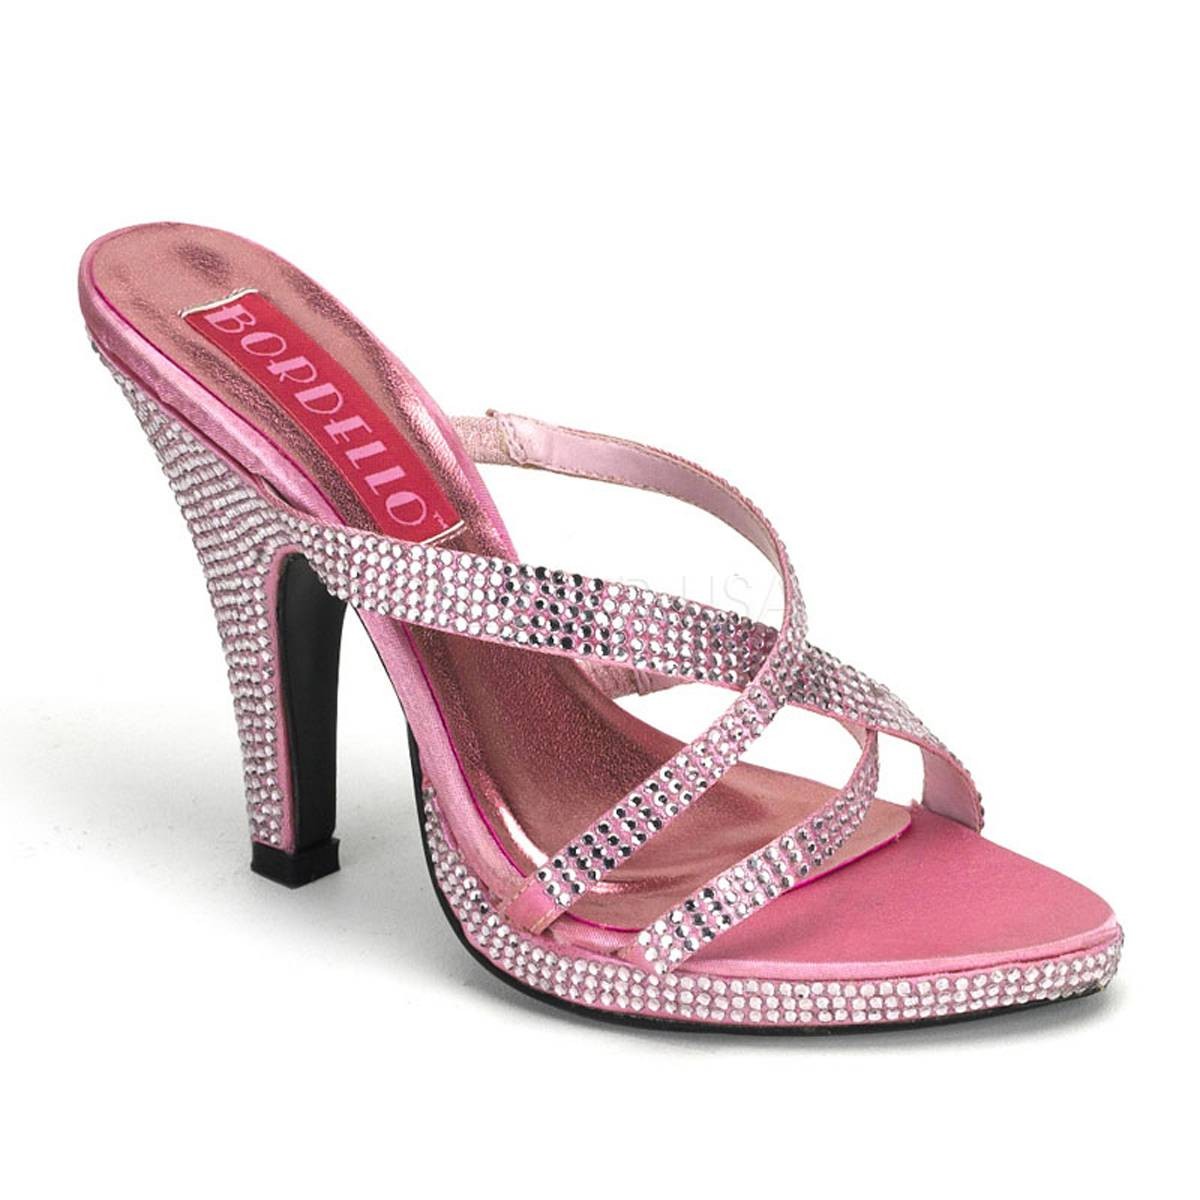 Sandalen - SIREN 02R ° Damen Sandalette ° Pink Strass ° Bordello  - Onlineshop RedSixty